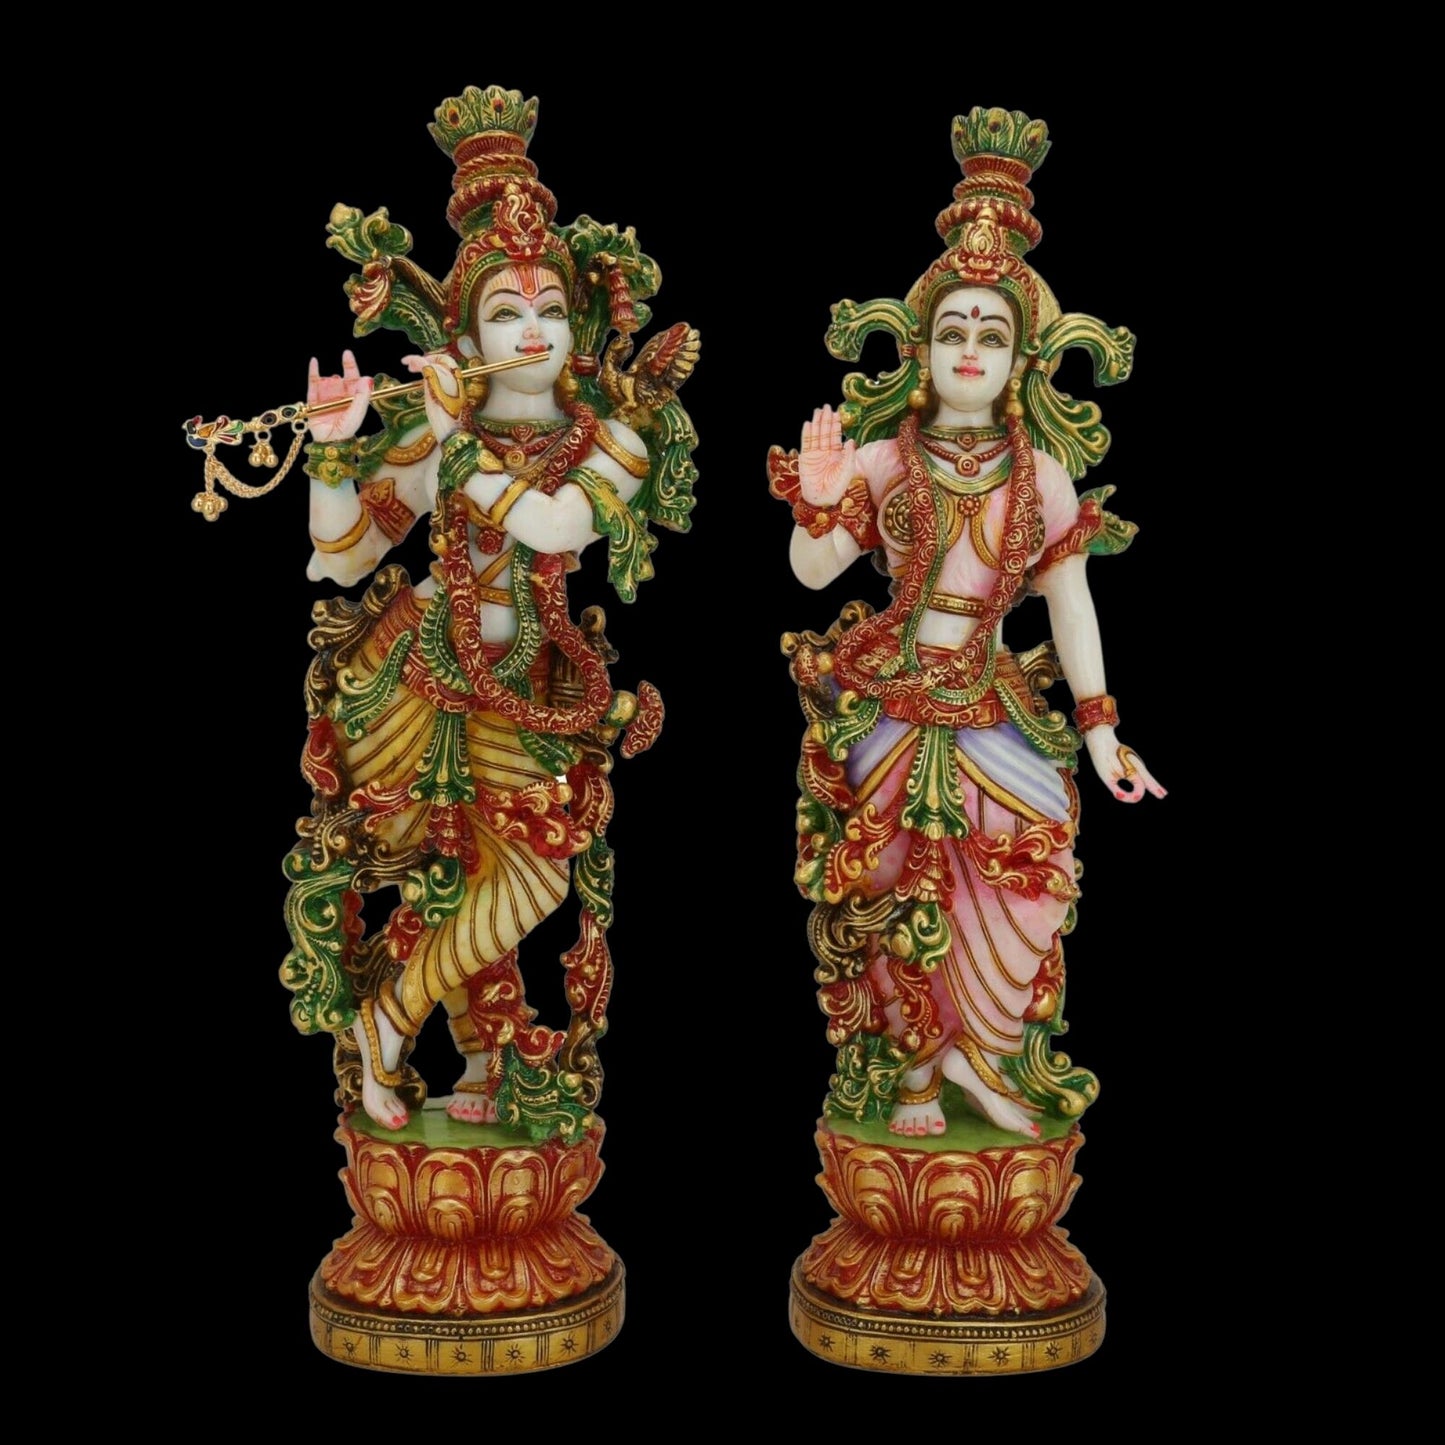 Radha Krishna statue - Large 15 inches Marble Radha Krishna Murti - Divine Couple Idol - Multicolor figurine Handpainted Radha Kanha Murti - Special Wedding Housewarming Anniversary Gifts Sculpture